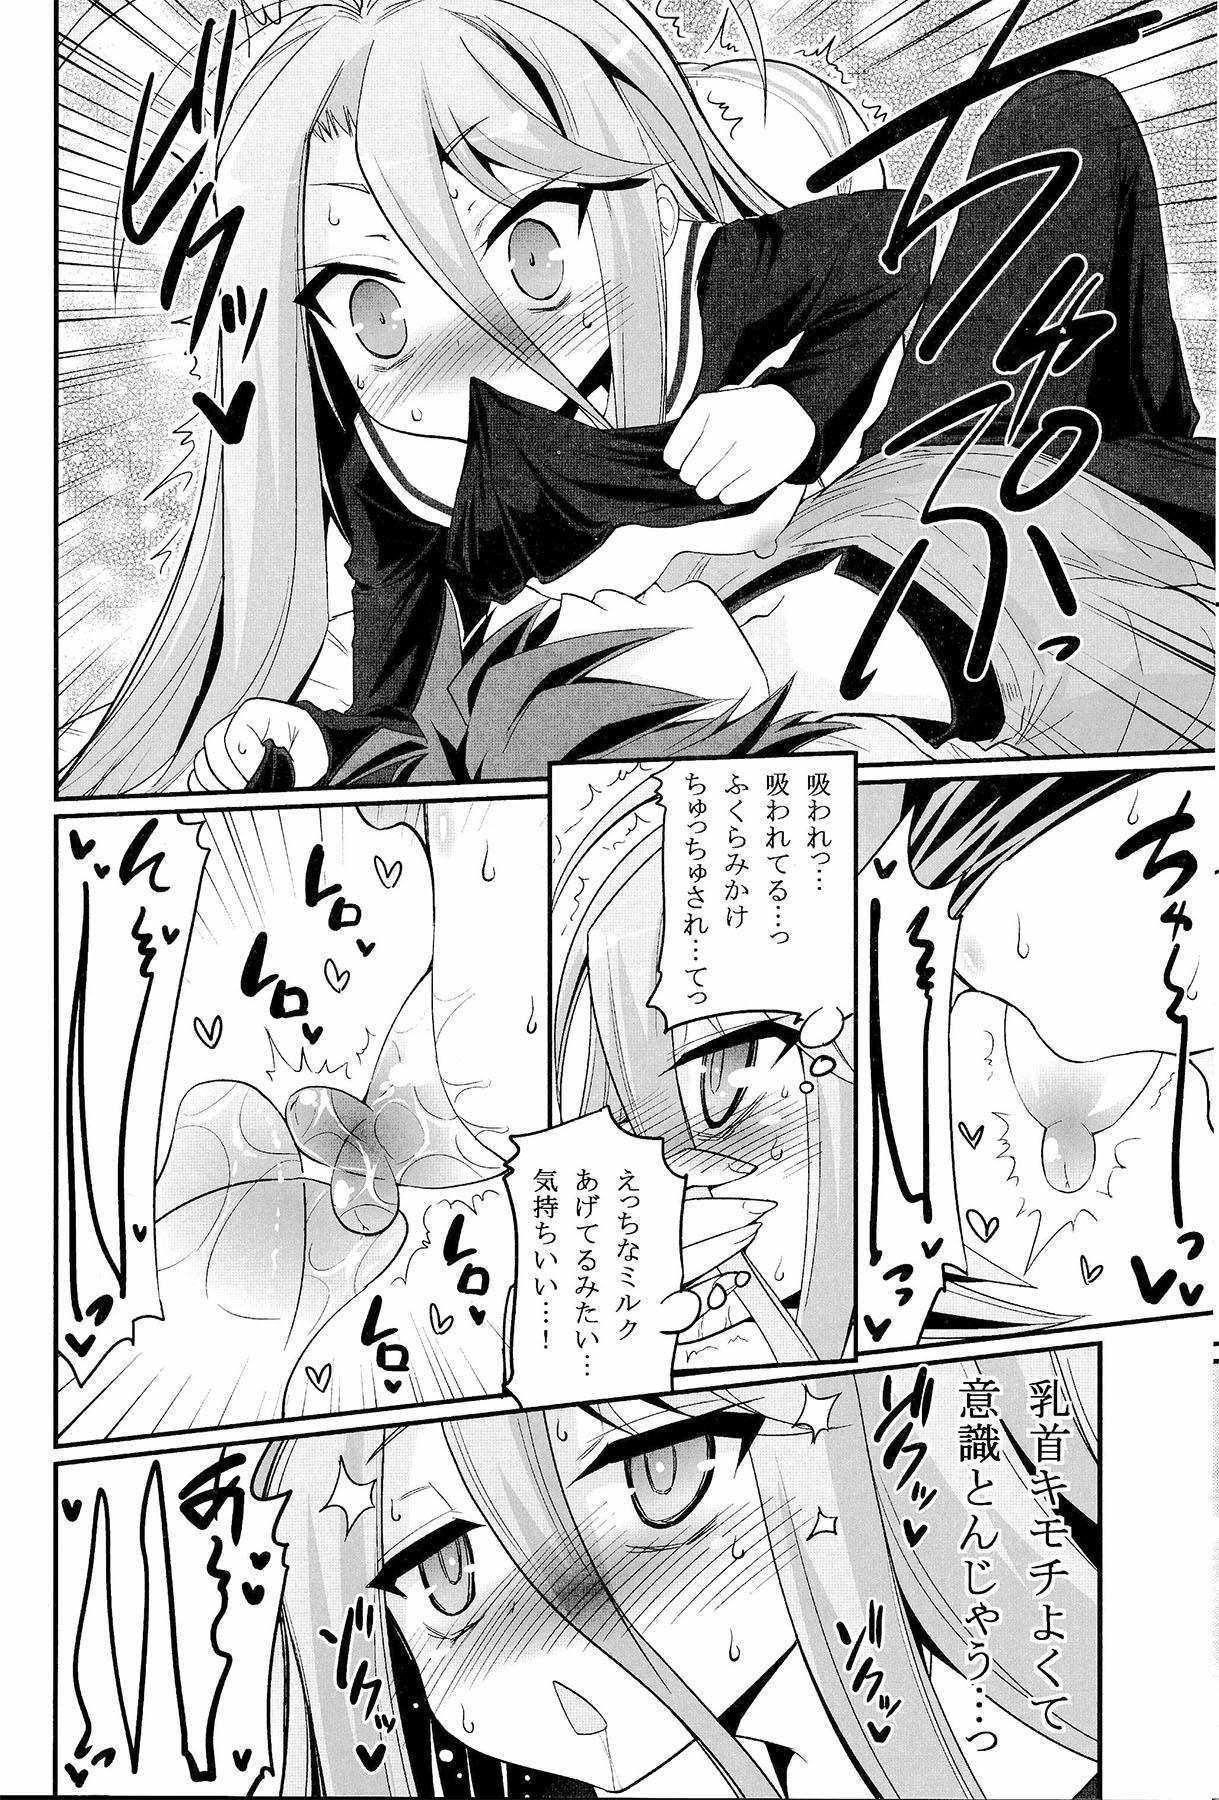 Sex Shiro-chan ga nekomi wo osoi ni kuru sou desu - No game no life Lesbos - Page 7